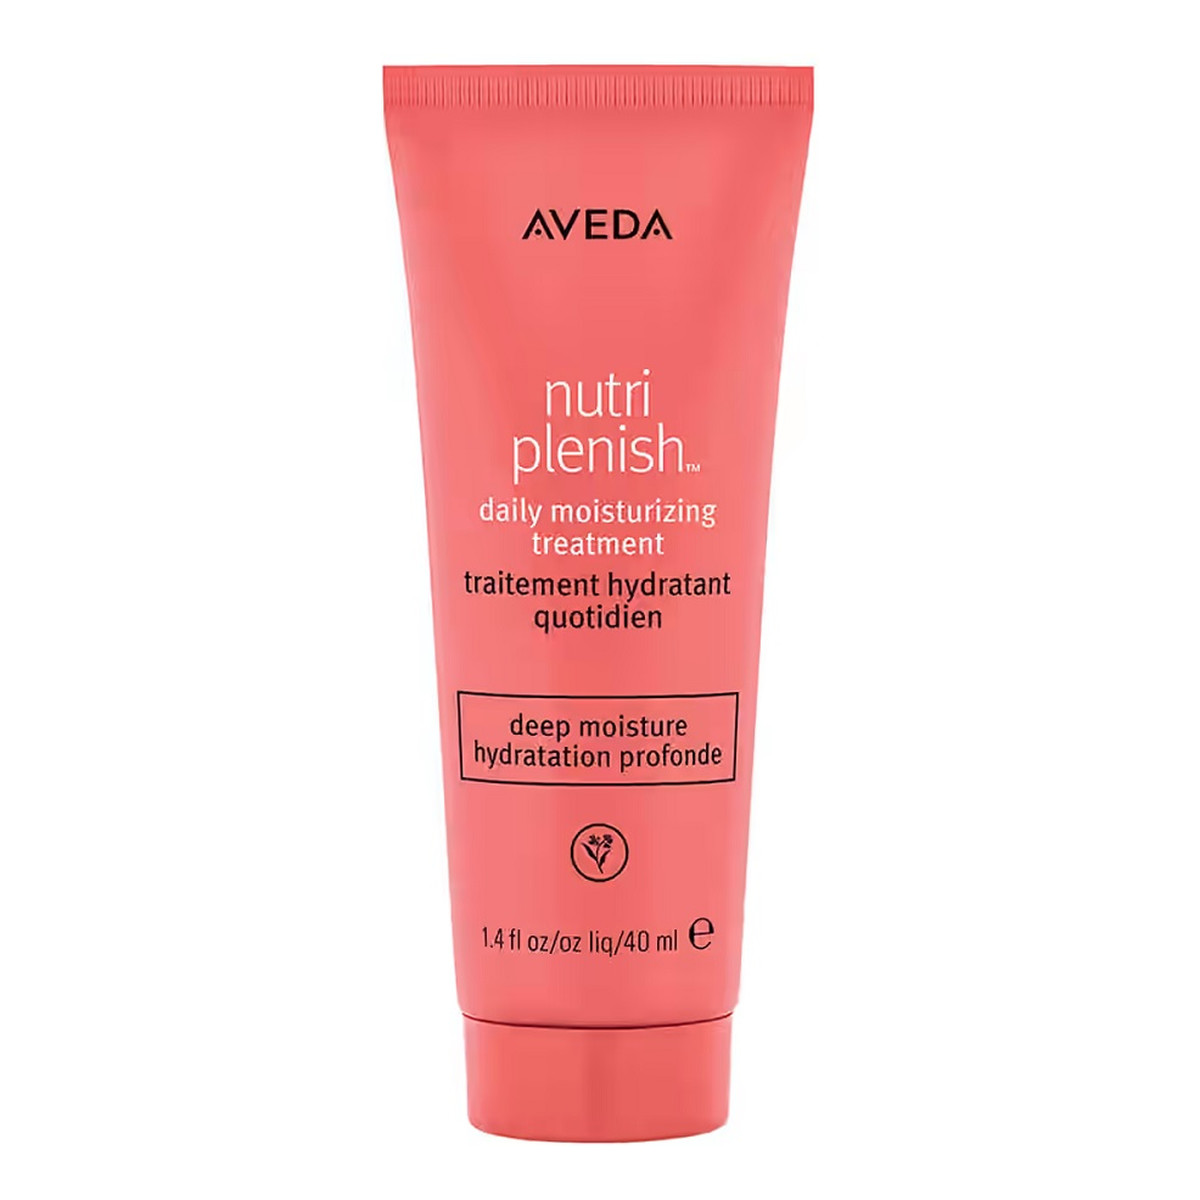 Aveda Nutriplenish daily moisturizing treatment nawilżająca odżywka do włosów bez spłukiwania 40ml